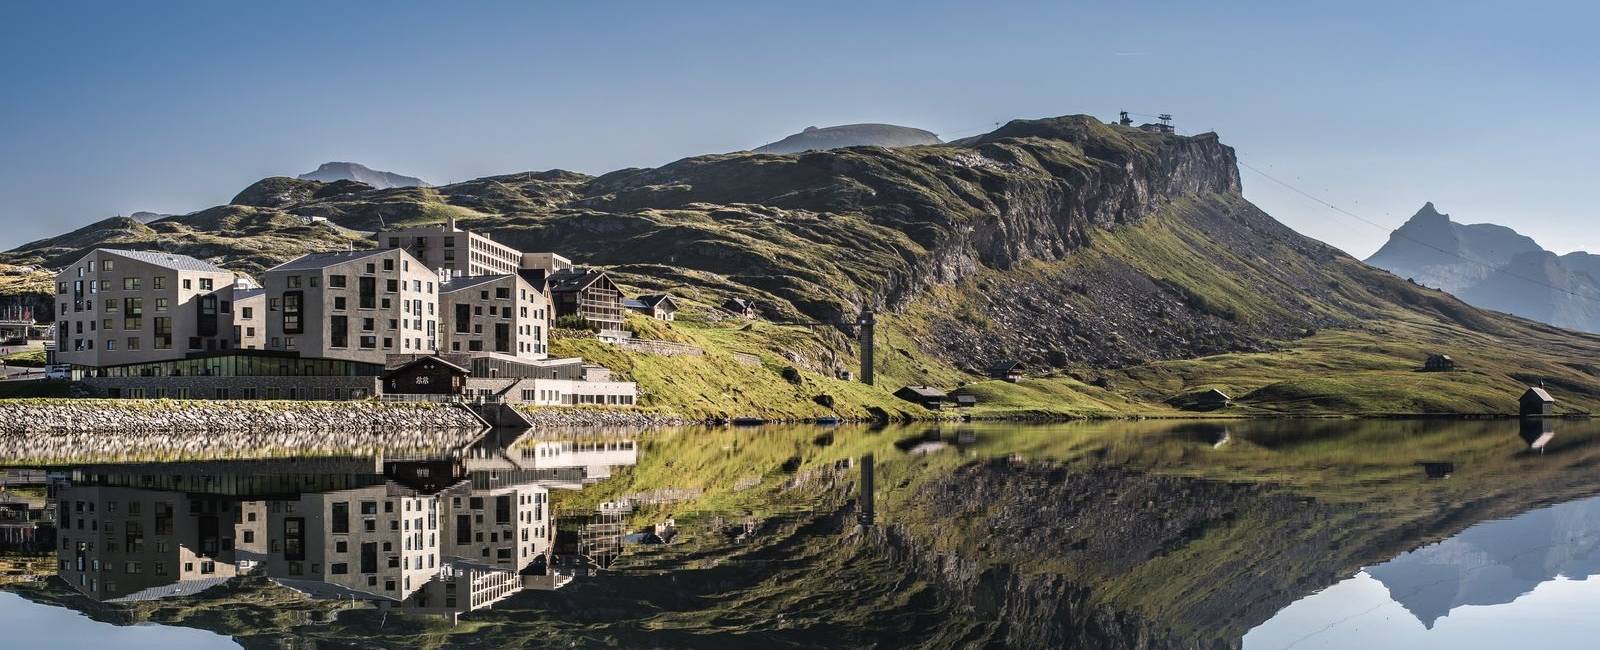  Schweiz 

Die besten Hotels am See